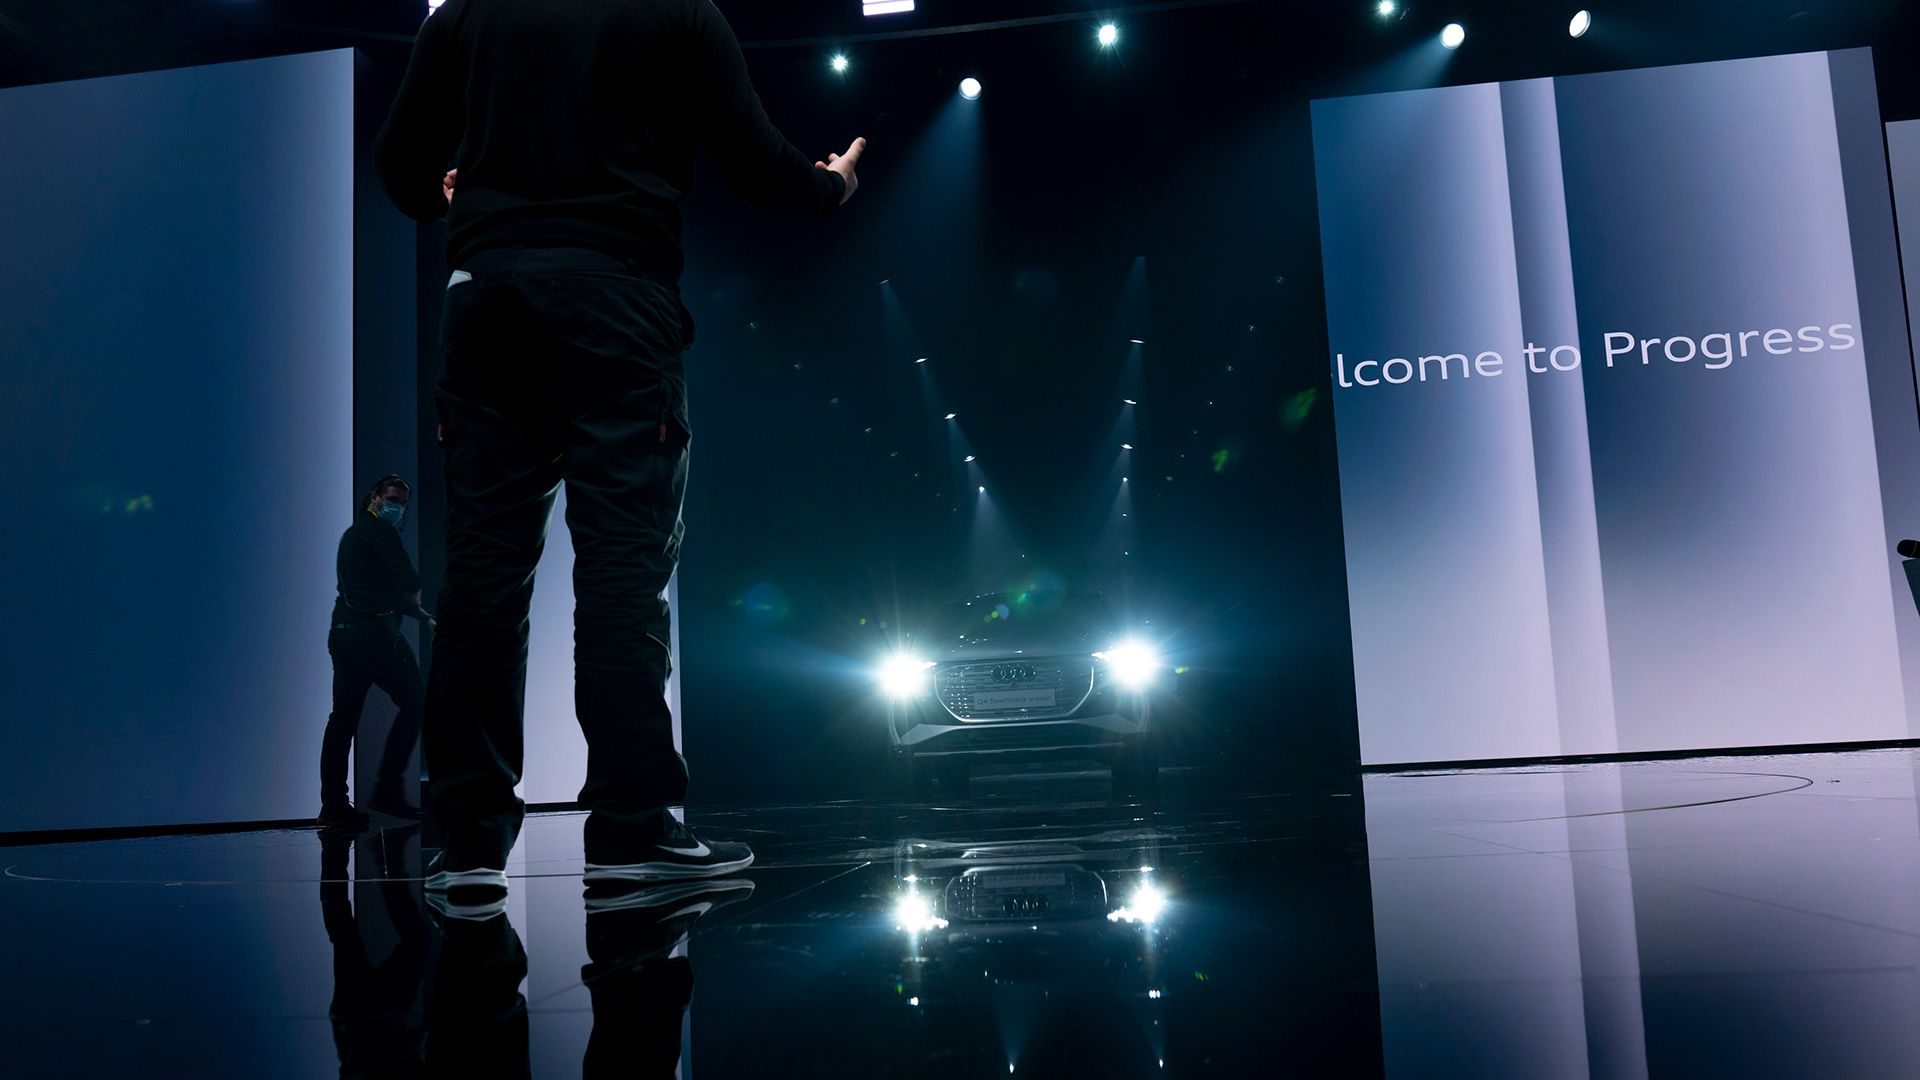 Entrée en scène de l’Audi Q4 e-tron sous la lumière des projecteurs. Sur un écran à droite apparaît le message suivant : “Welcome to Progress”.